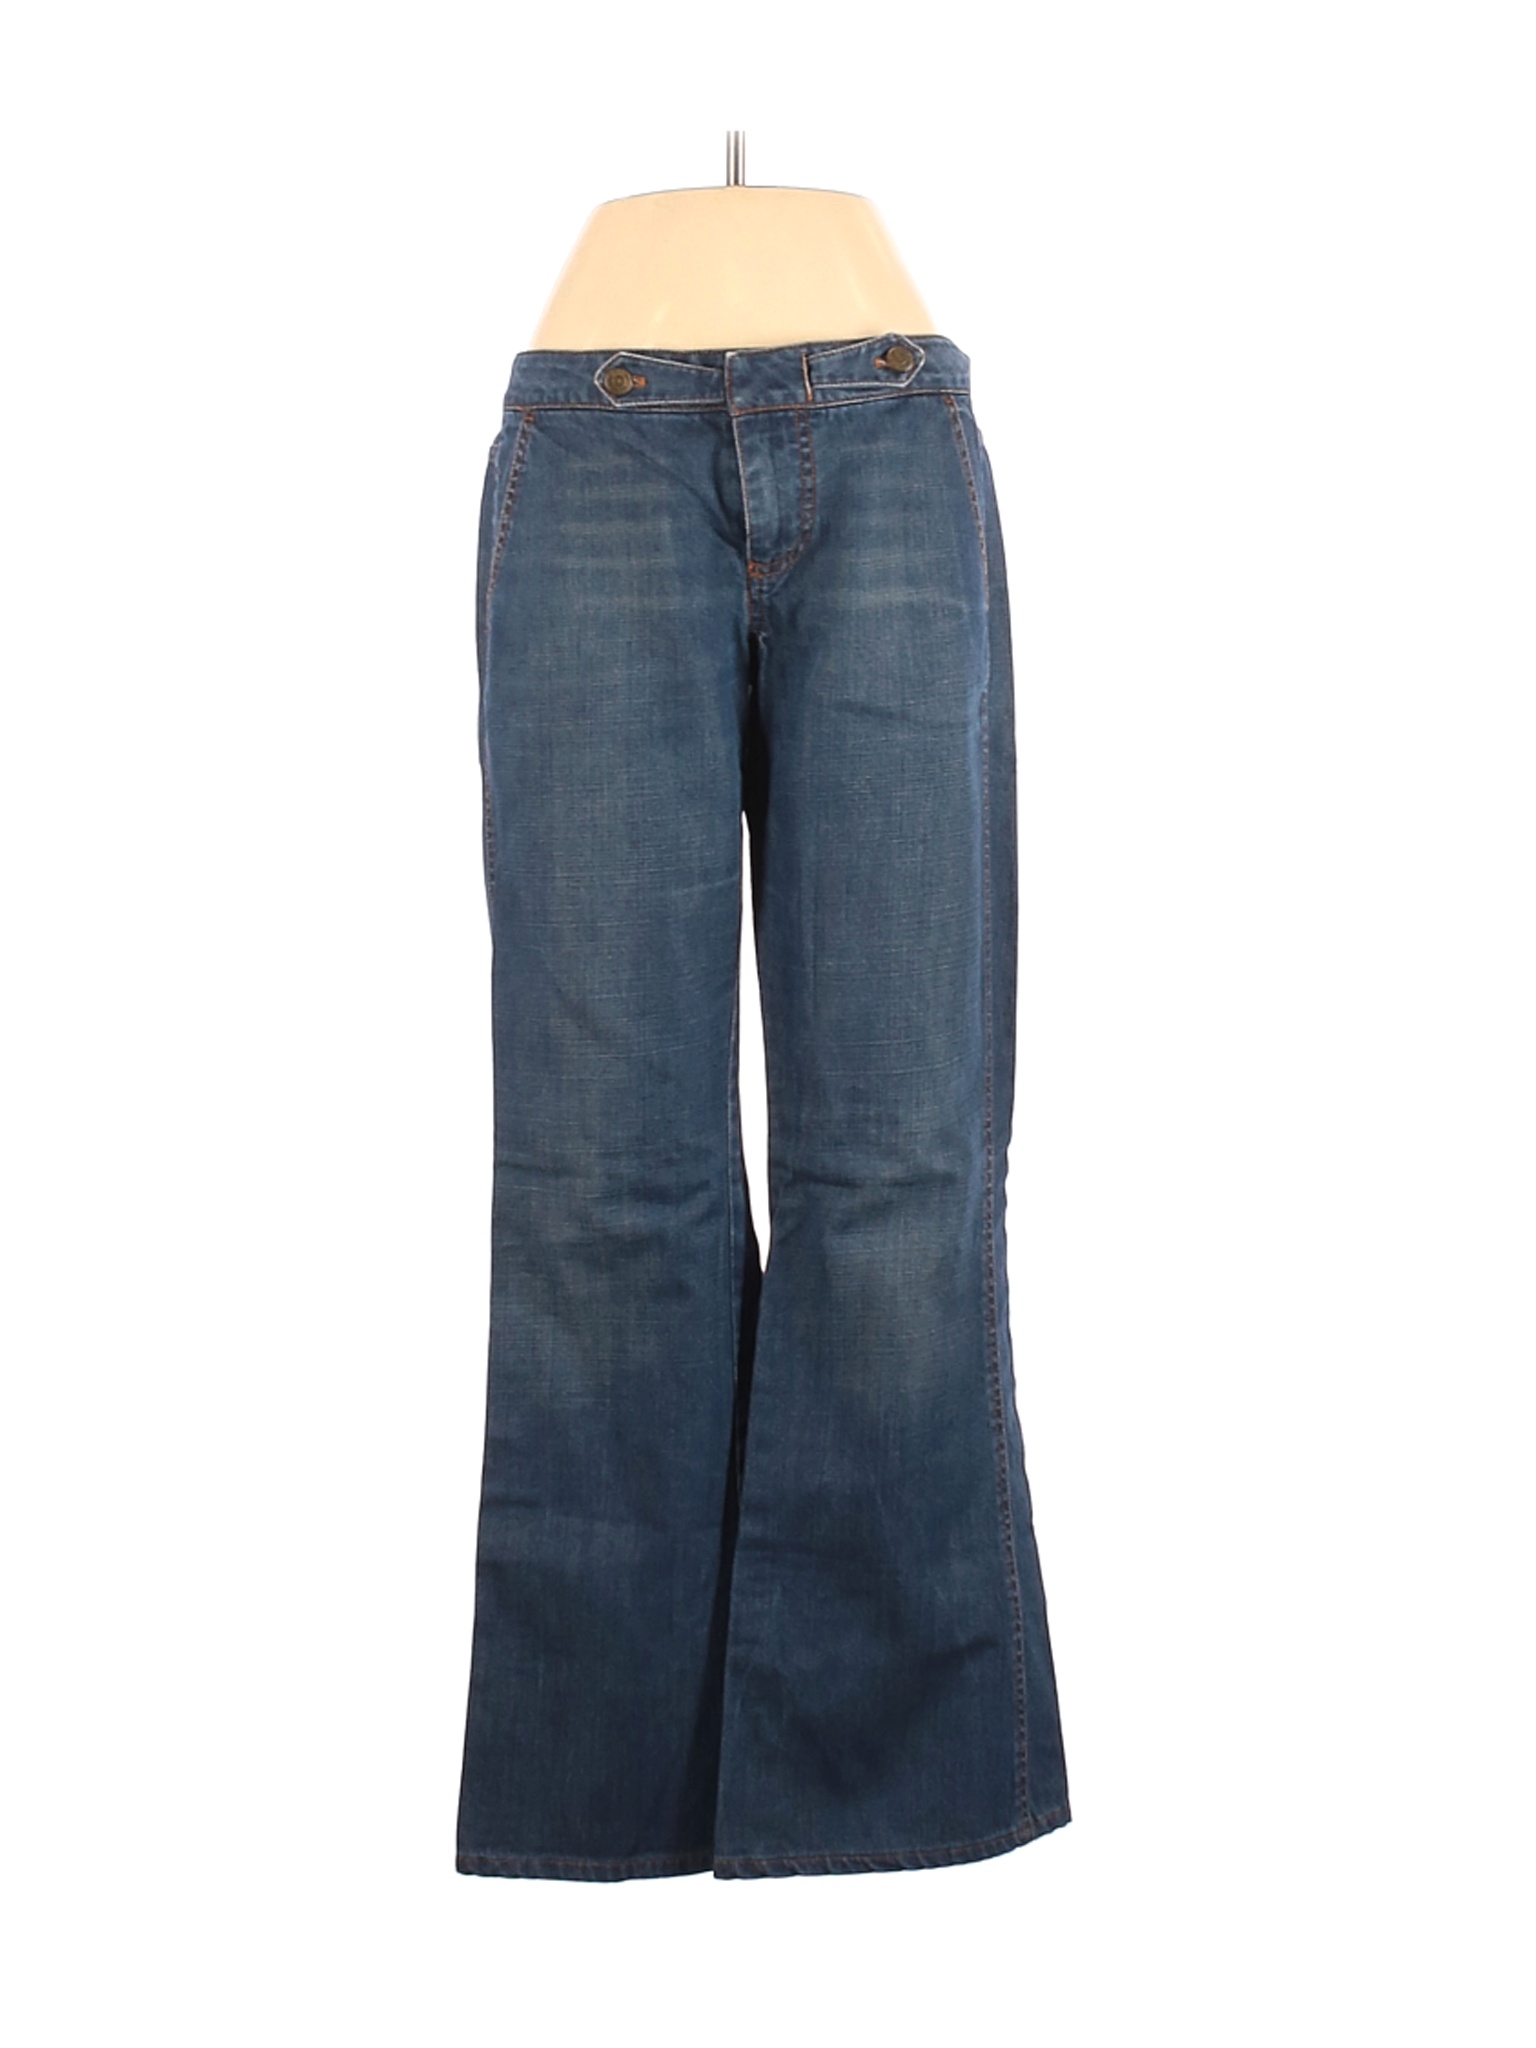 Marc by Marc Jacobs Women Blue Jeans 4 | eBay